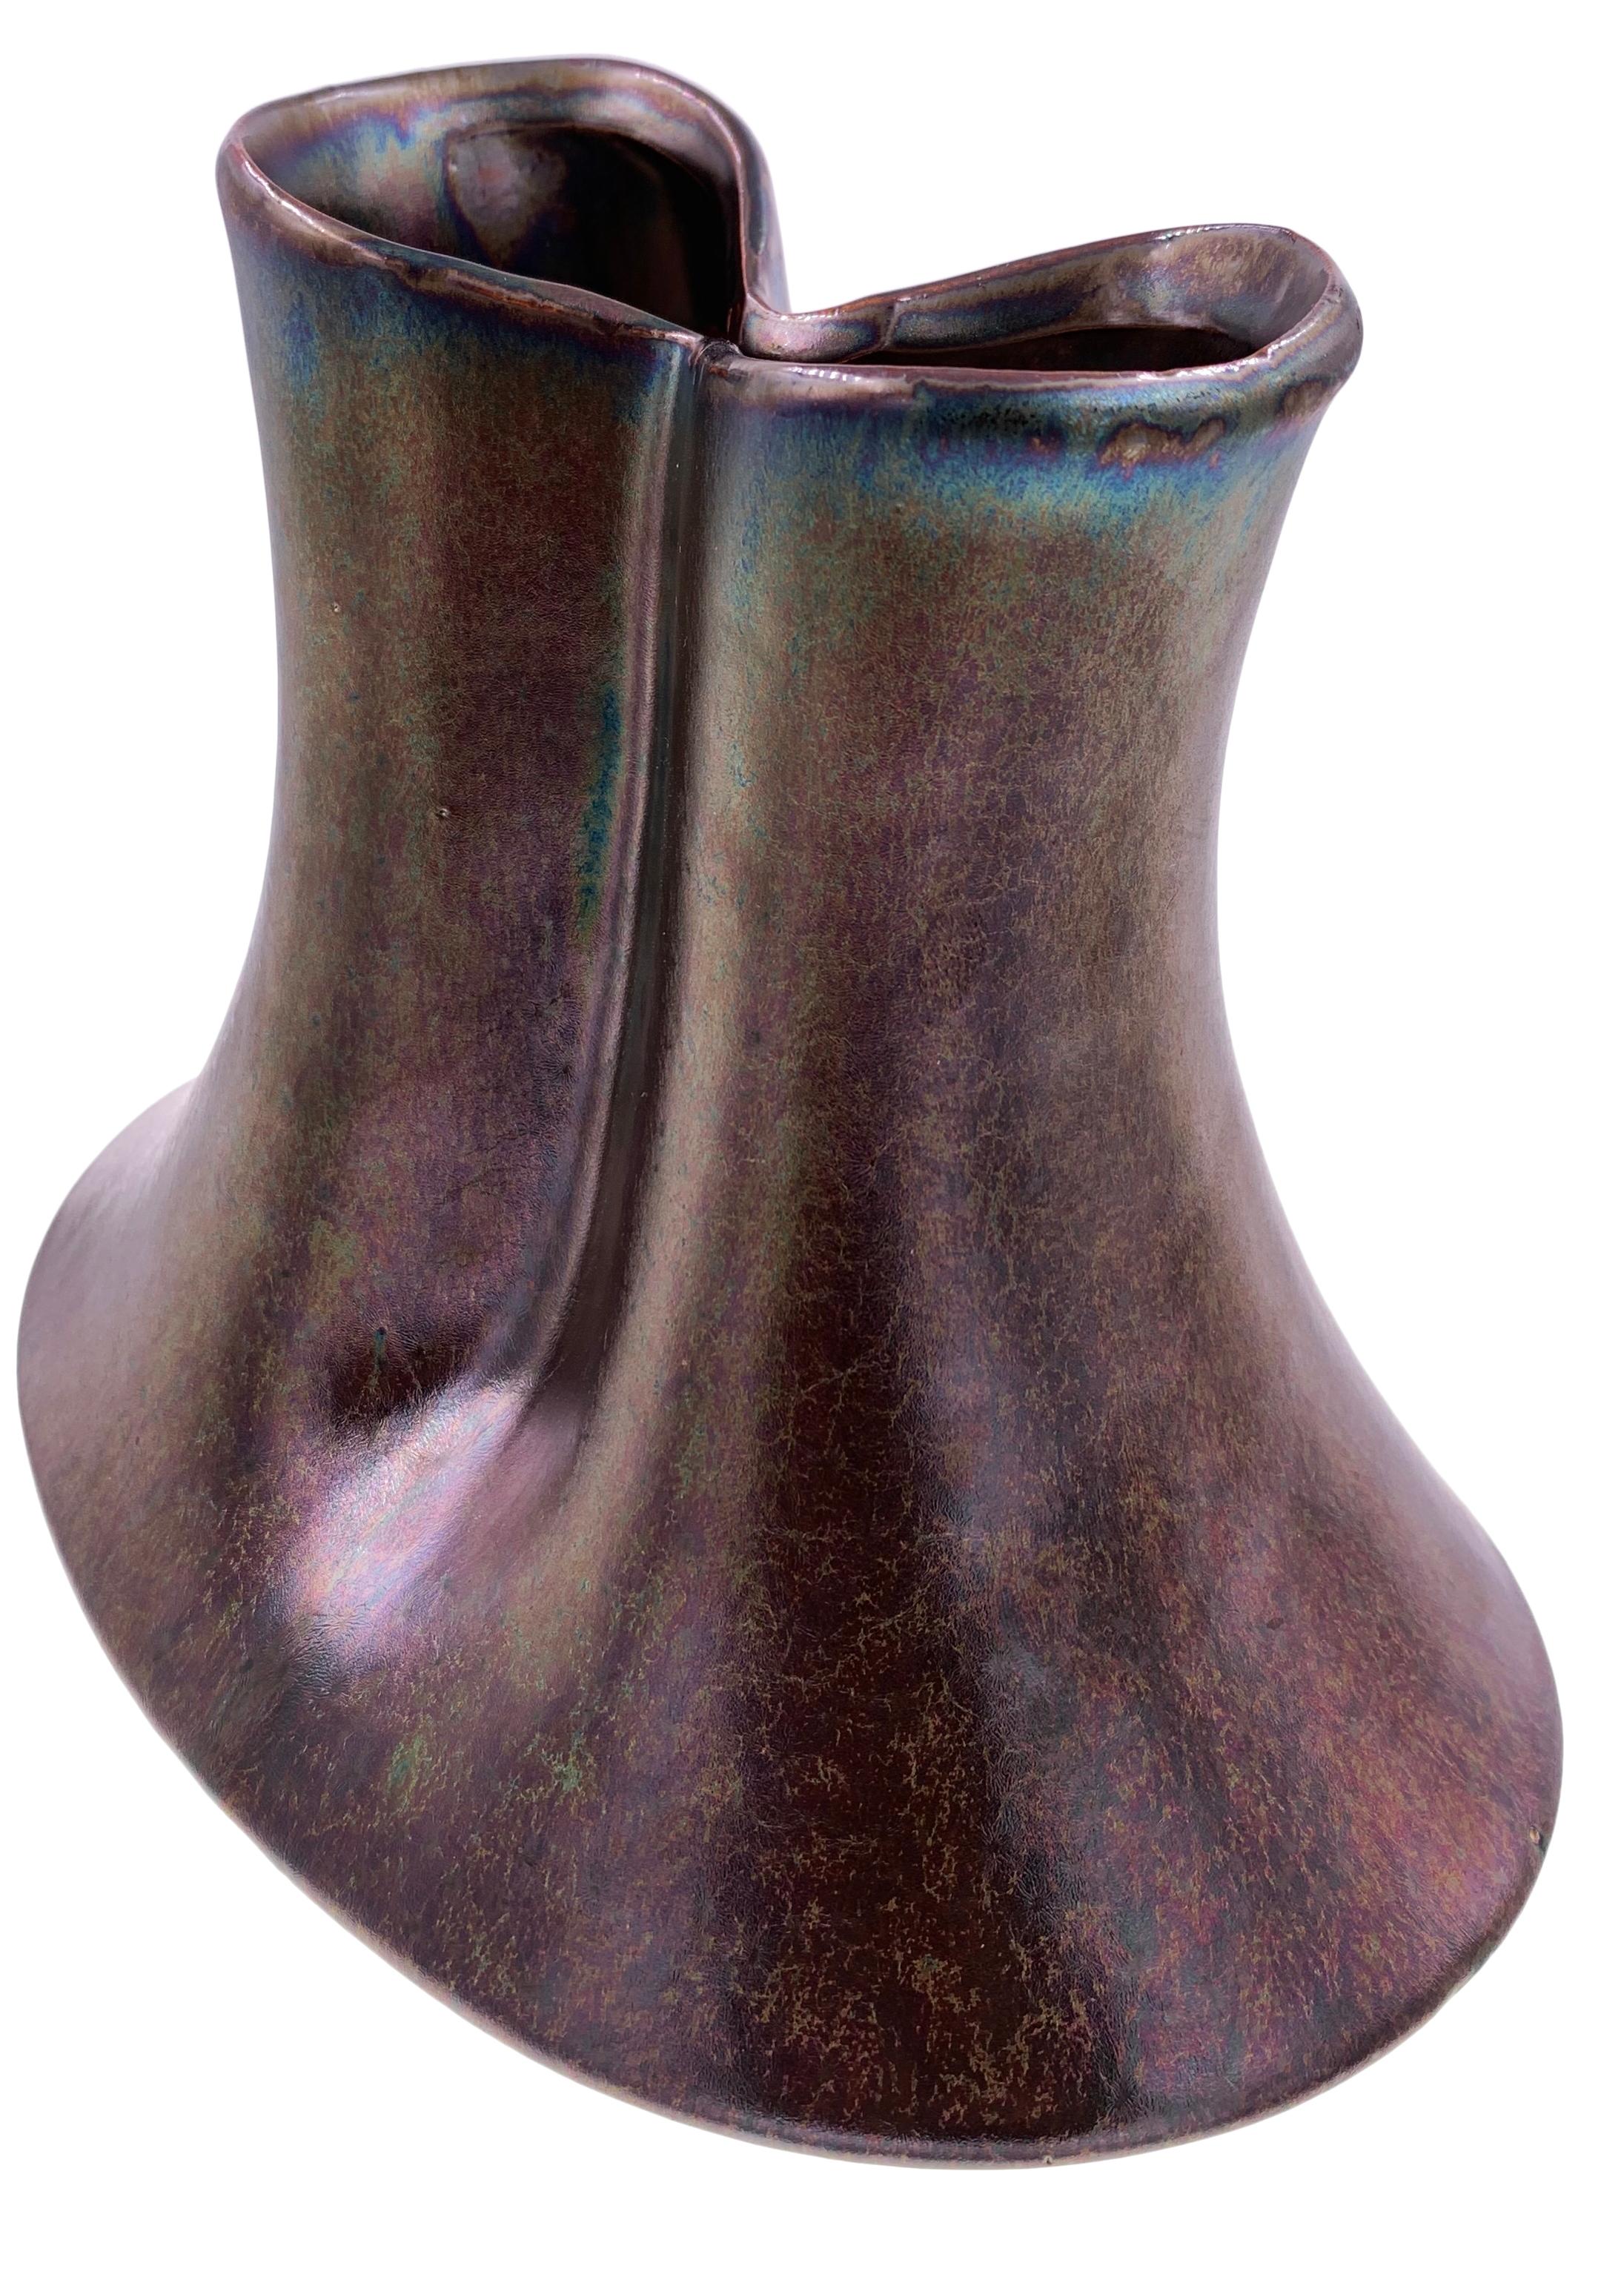 Description : Vase en céramique - Le Grain
Taille : 20 x 14 x 18 H cm
Matériau : Céramique
Collection : Rythme du milieu du siècle
Remarque : Chaque vase est fabriqué à la main, les nuances de couleur peuvent donc varier d'un vase à l'autre